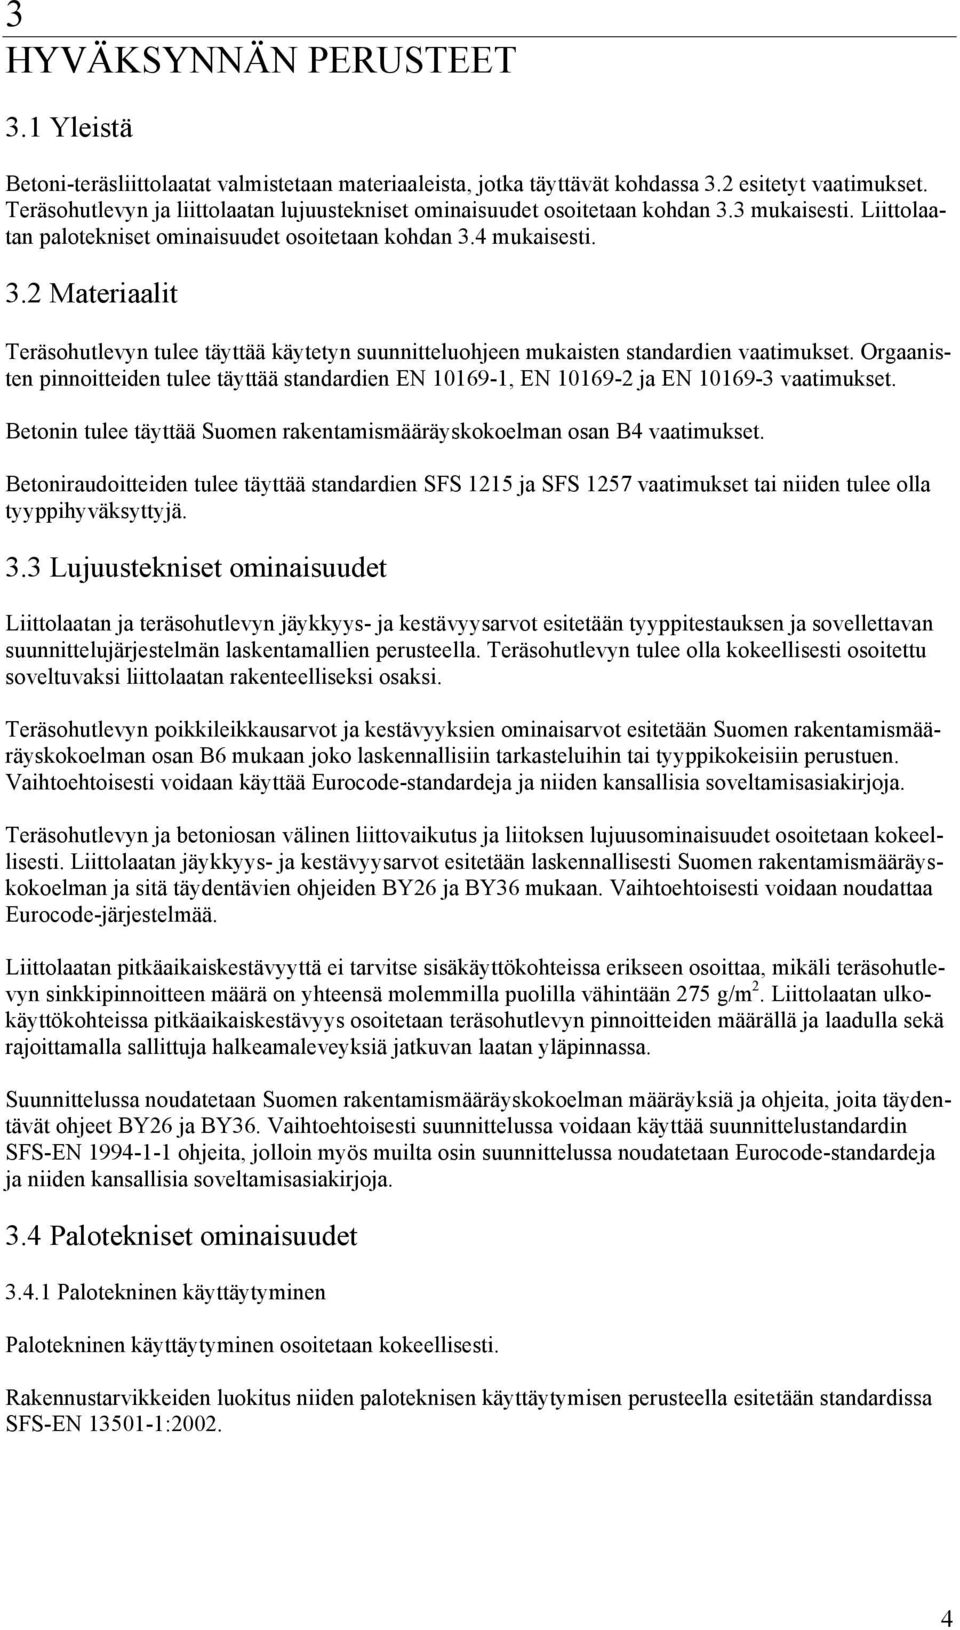 Orgaanisten pinnoitteiden tulee täyttää standardien EN 10169-1, EN 10169-2 ja EN 10169-3 vaatimukset. Betonin tulee täyttää Suomen rakentamismääräyskokoelman osan B4 vaatimukset.